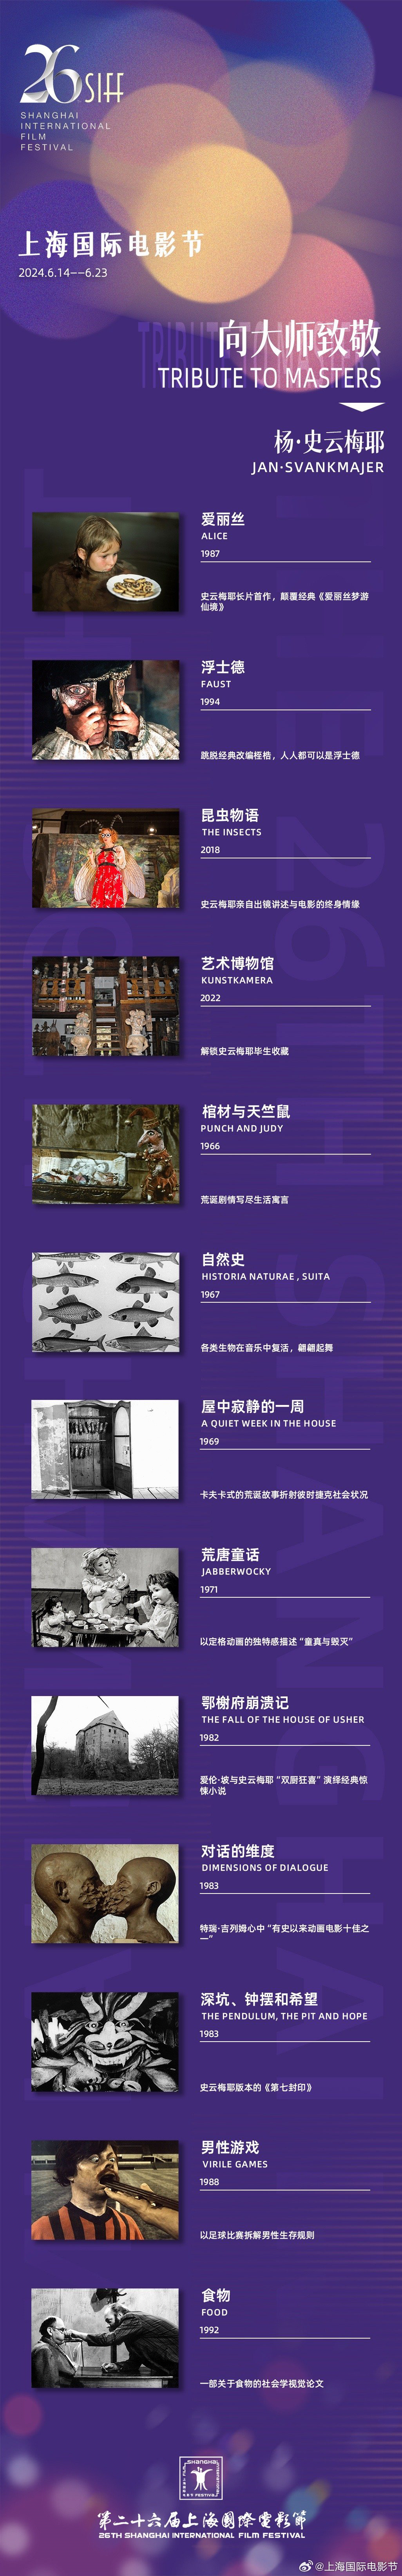 第26届上影节公布首批片单 展映杨·史云梅耶作品  第1张